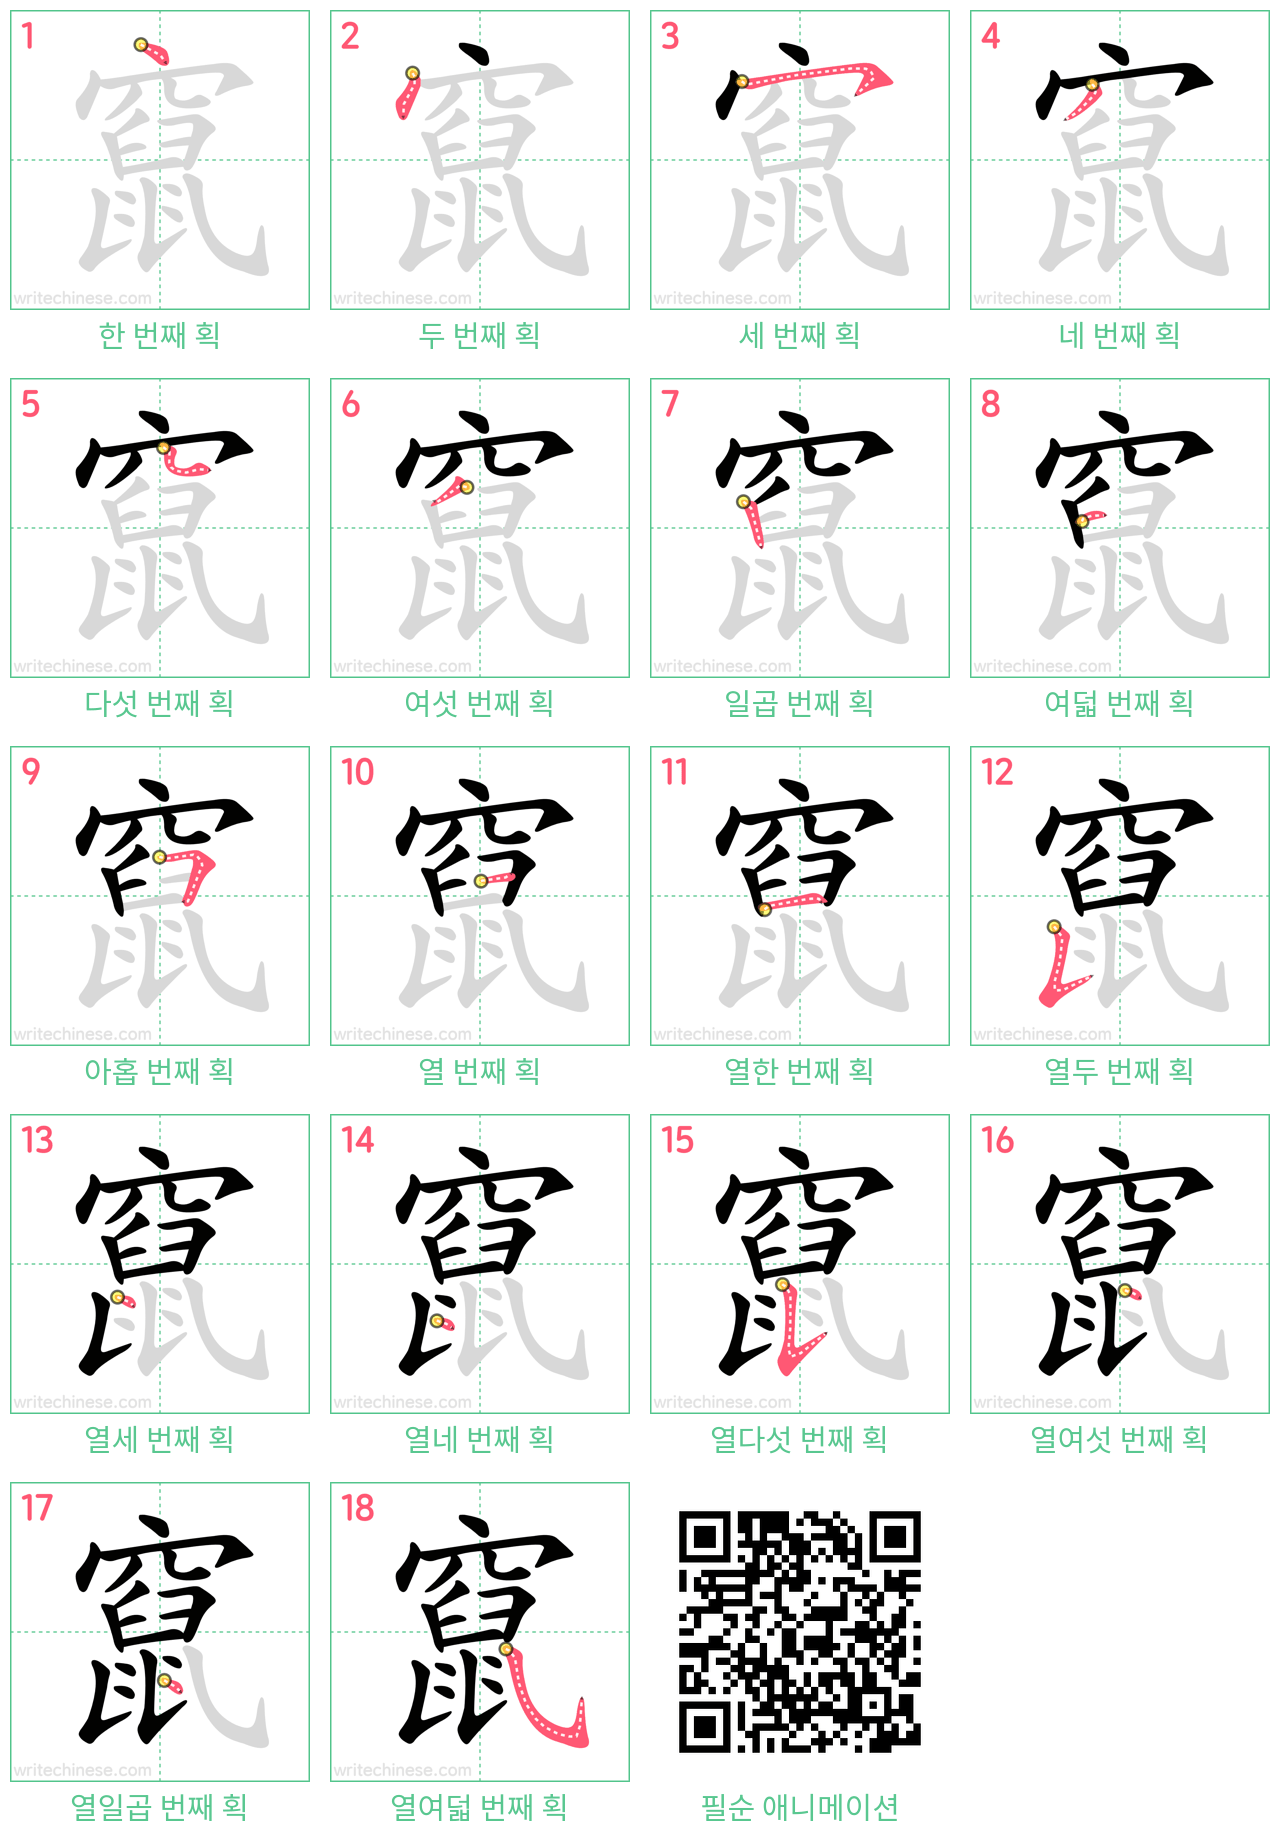 竄 step-by-step stroke order diagrams